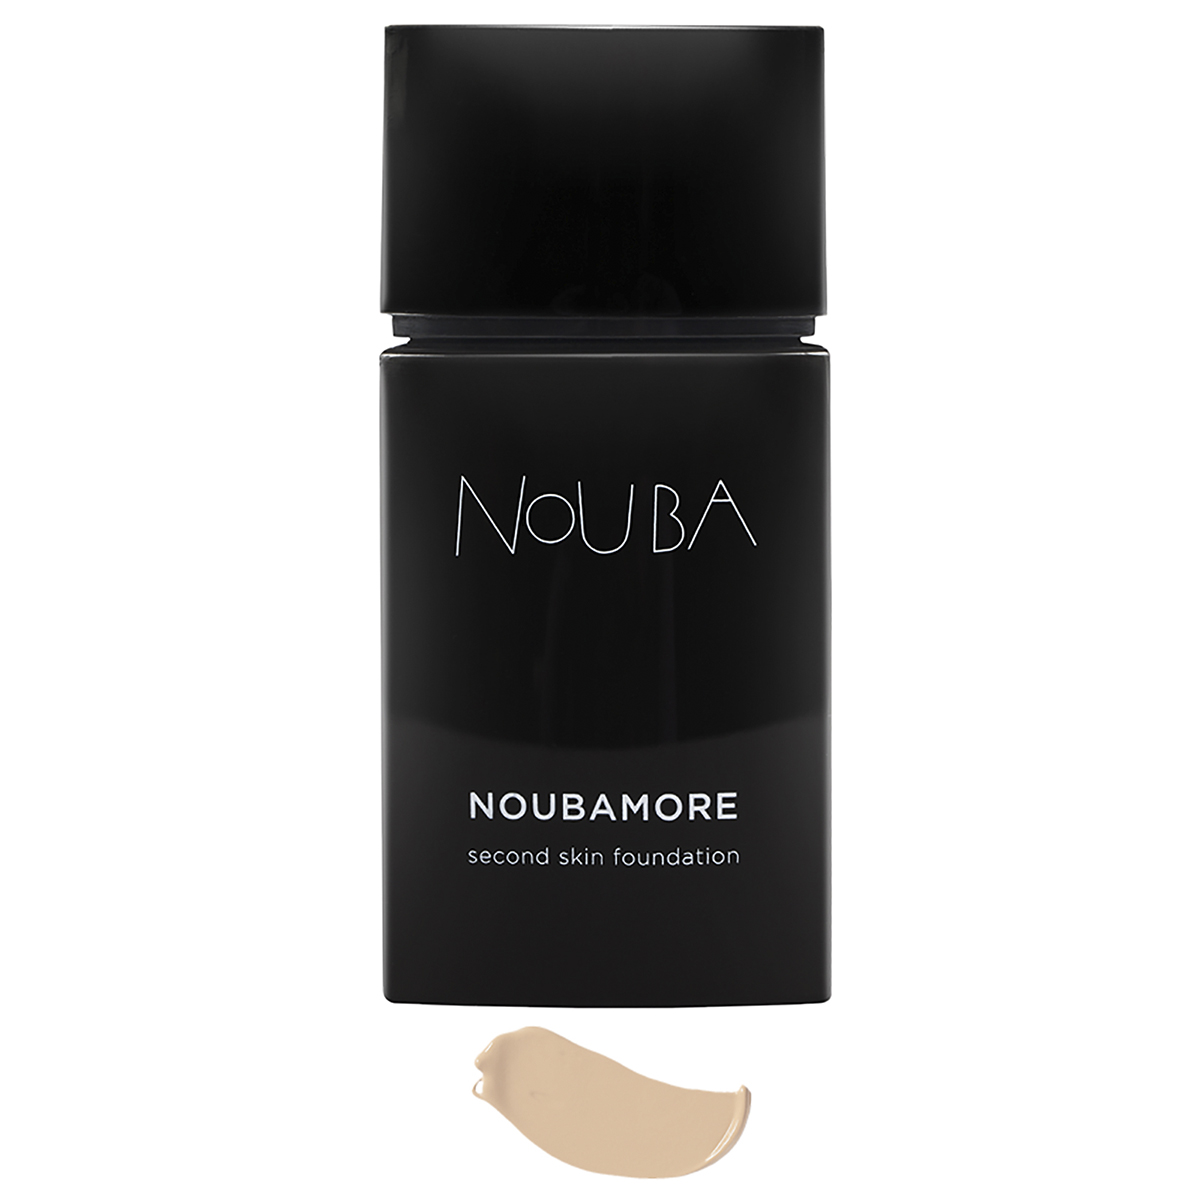 Nouba Тональная основа Noubamore, тон 82, 30 мл (Nouba, Лицо) тональная основа nouba noubamore 30 мл